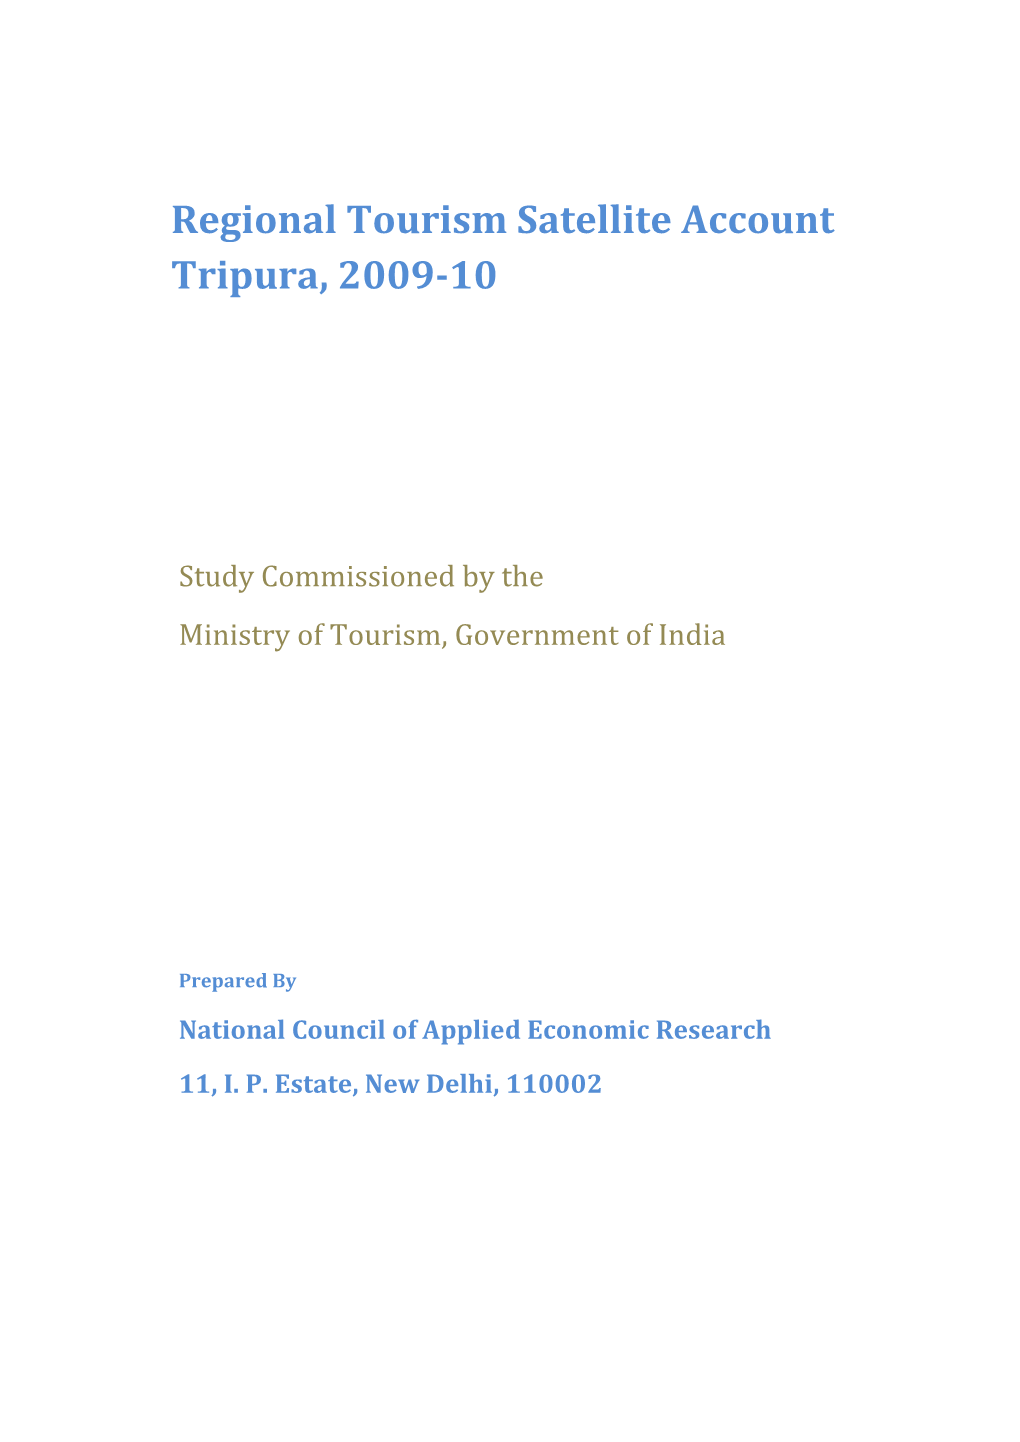 Regional Tourism Satellite Account Tripura, 2009-10